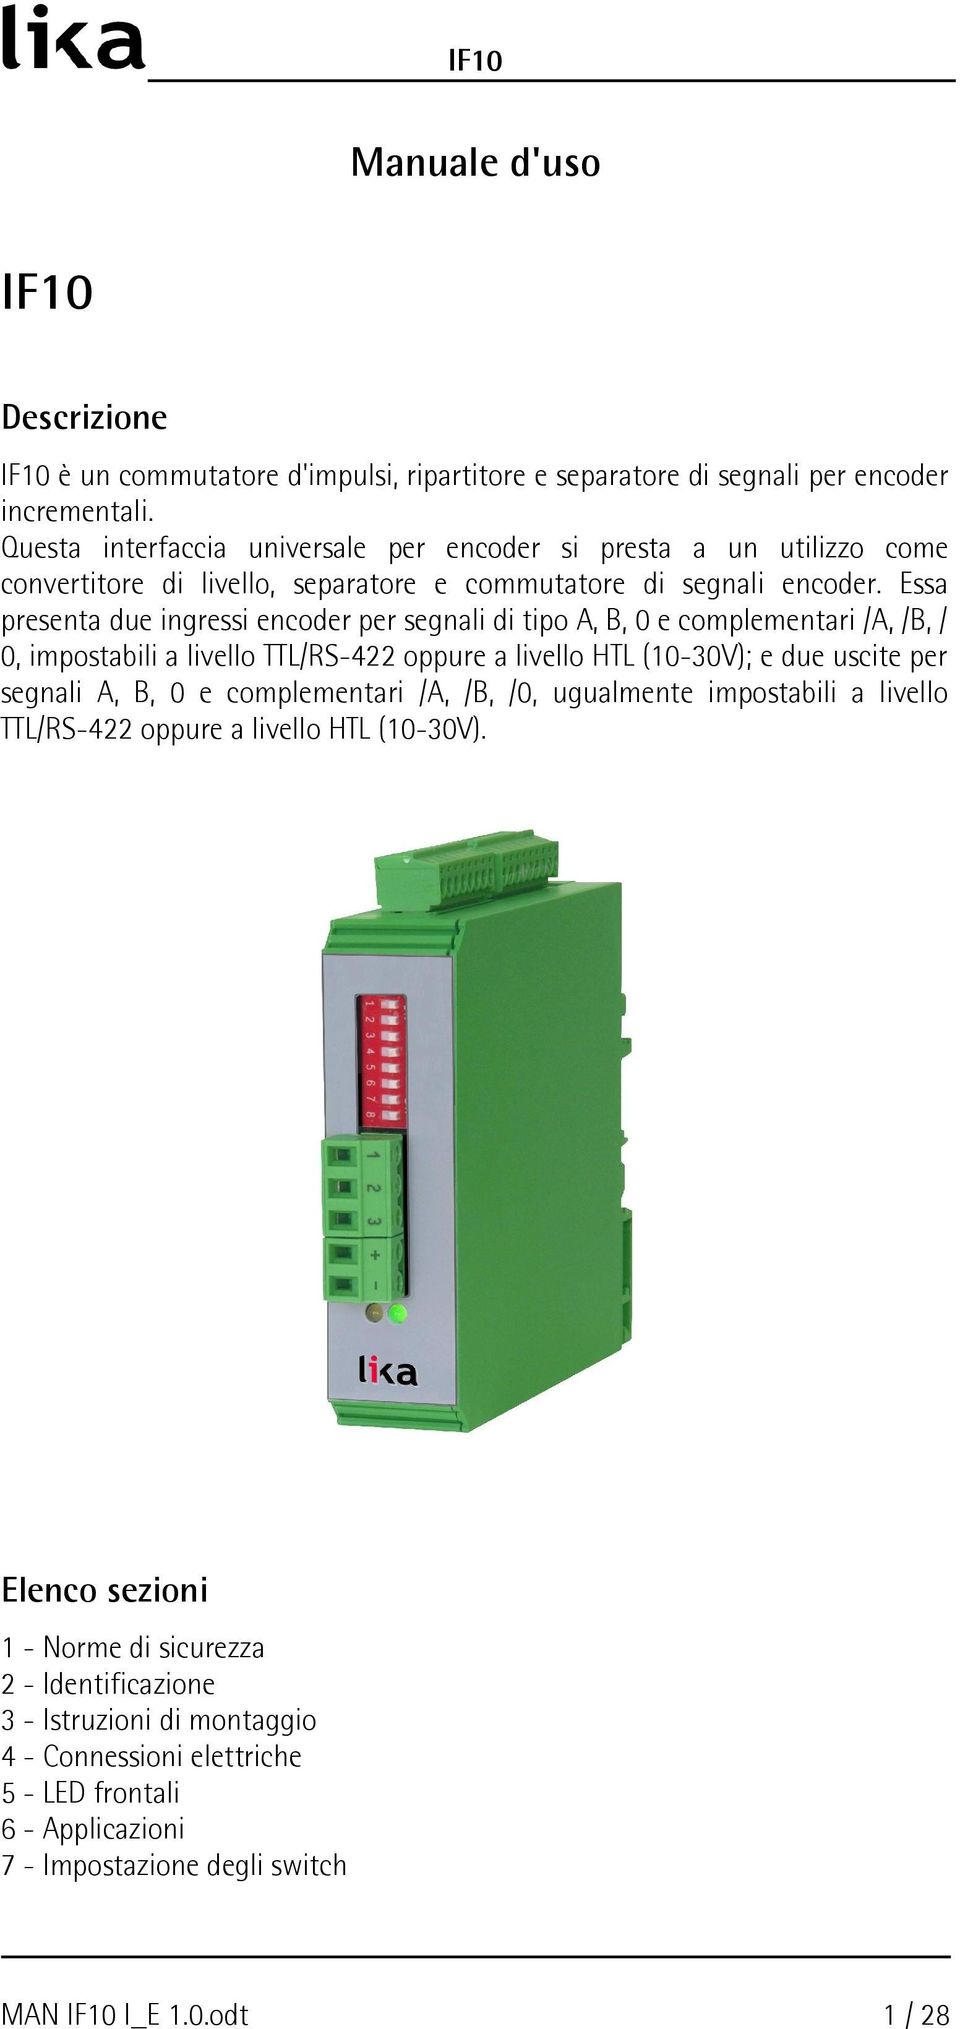 Essa presenta due ingressi encoder per segnali di tipo,, 0 e complementari /, /, / 0, impostabili a livello TTL/RS-422 oppure a livello HTL (10-30V); e due uscite per segnali,, 0 e